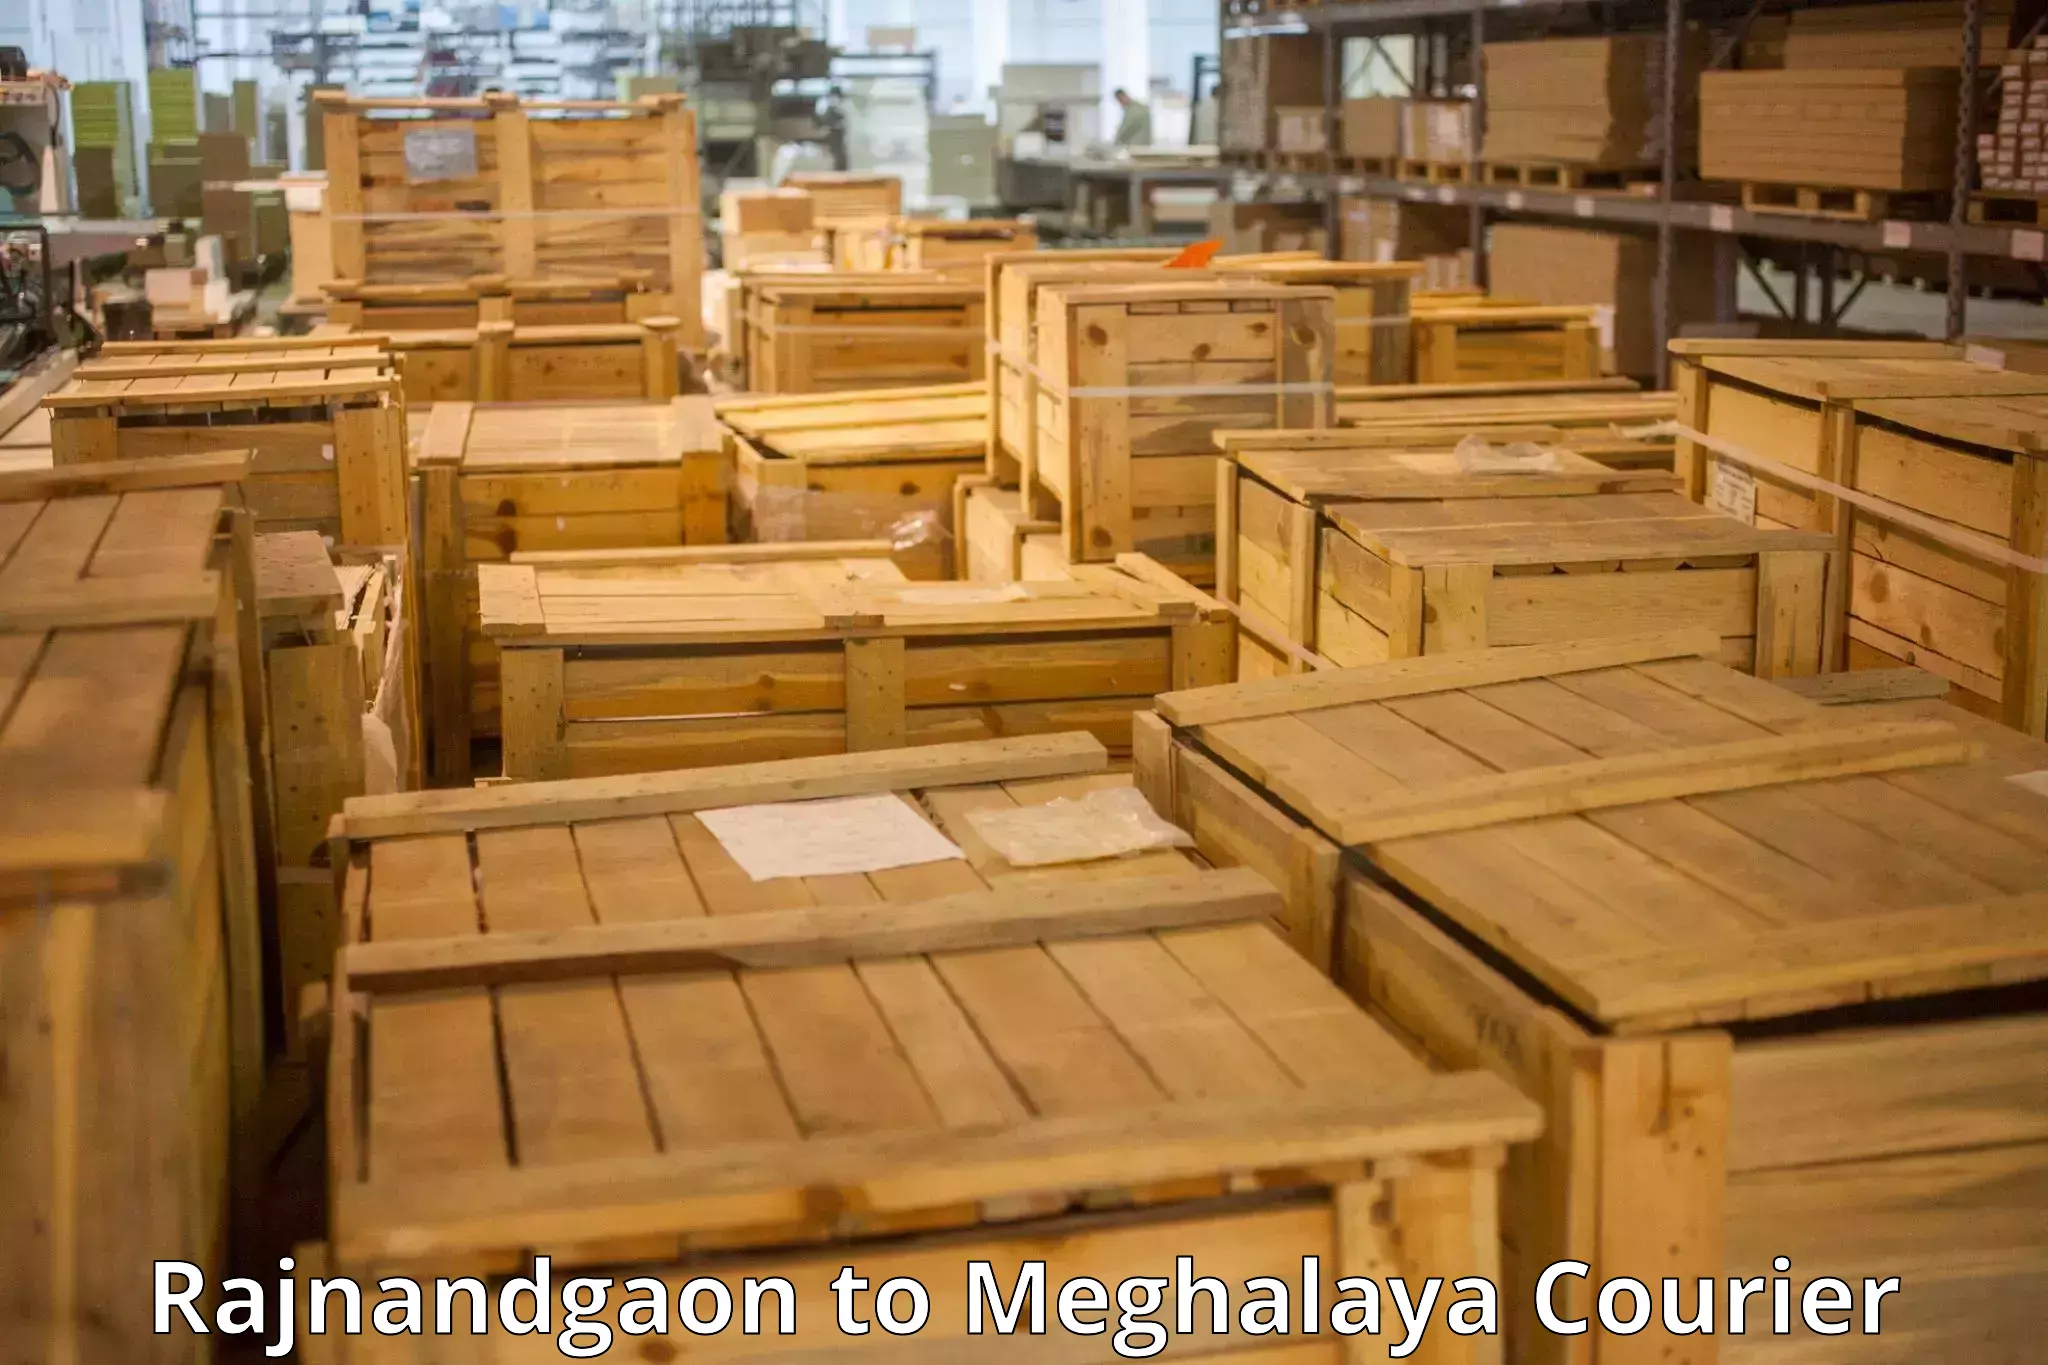 Luggage shipment specialists Rajnandgaon to East Khasi Hills